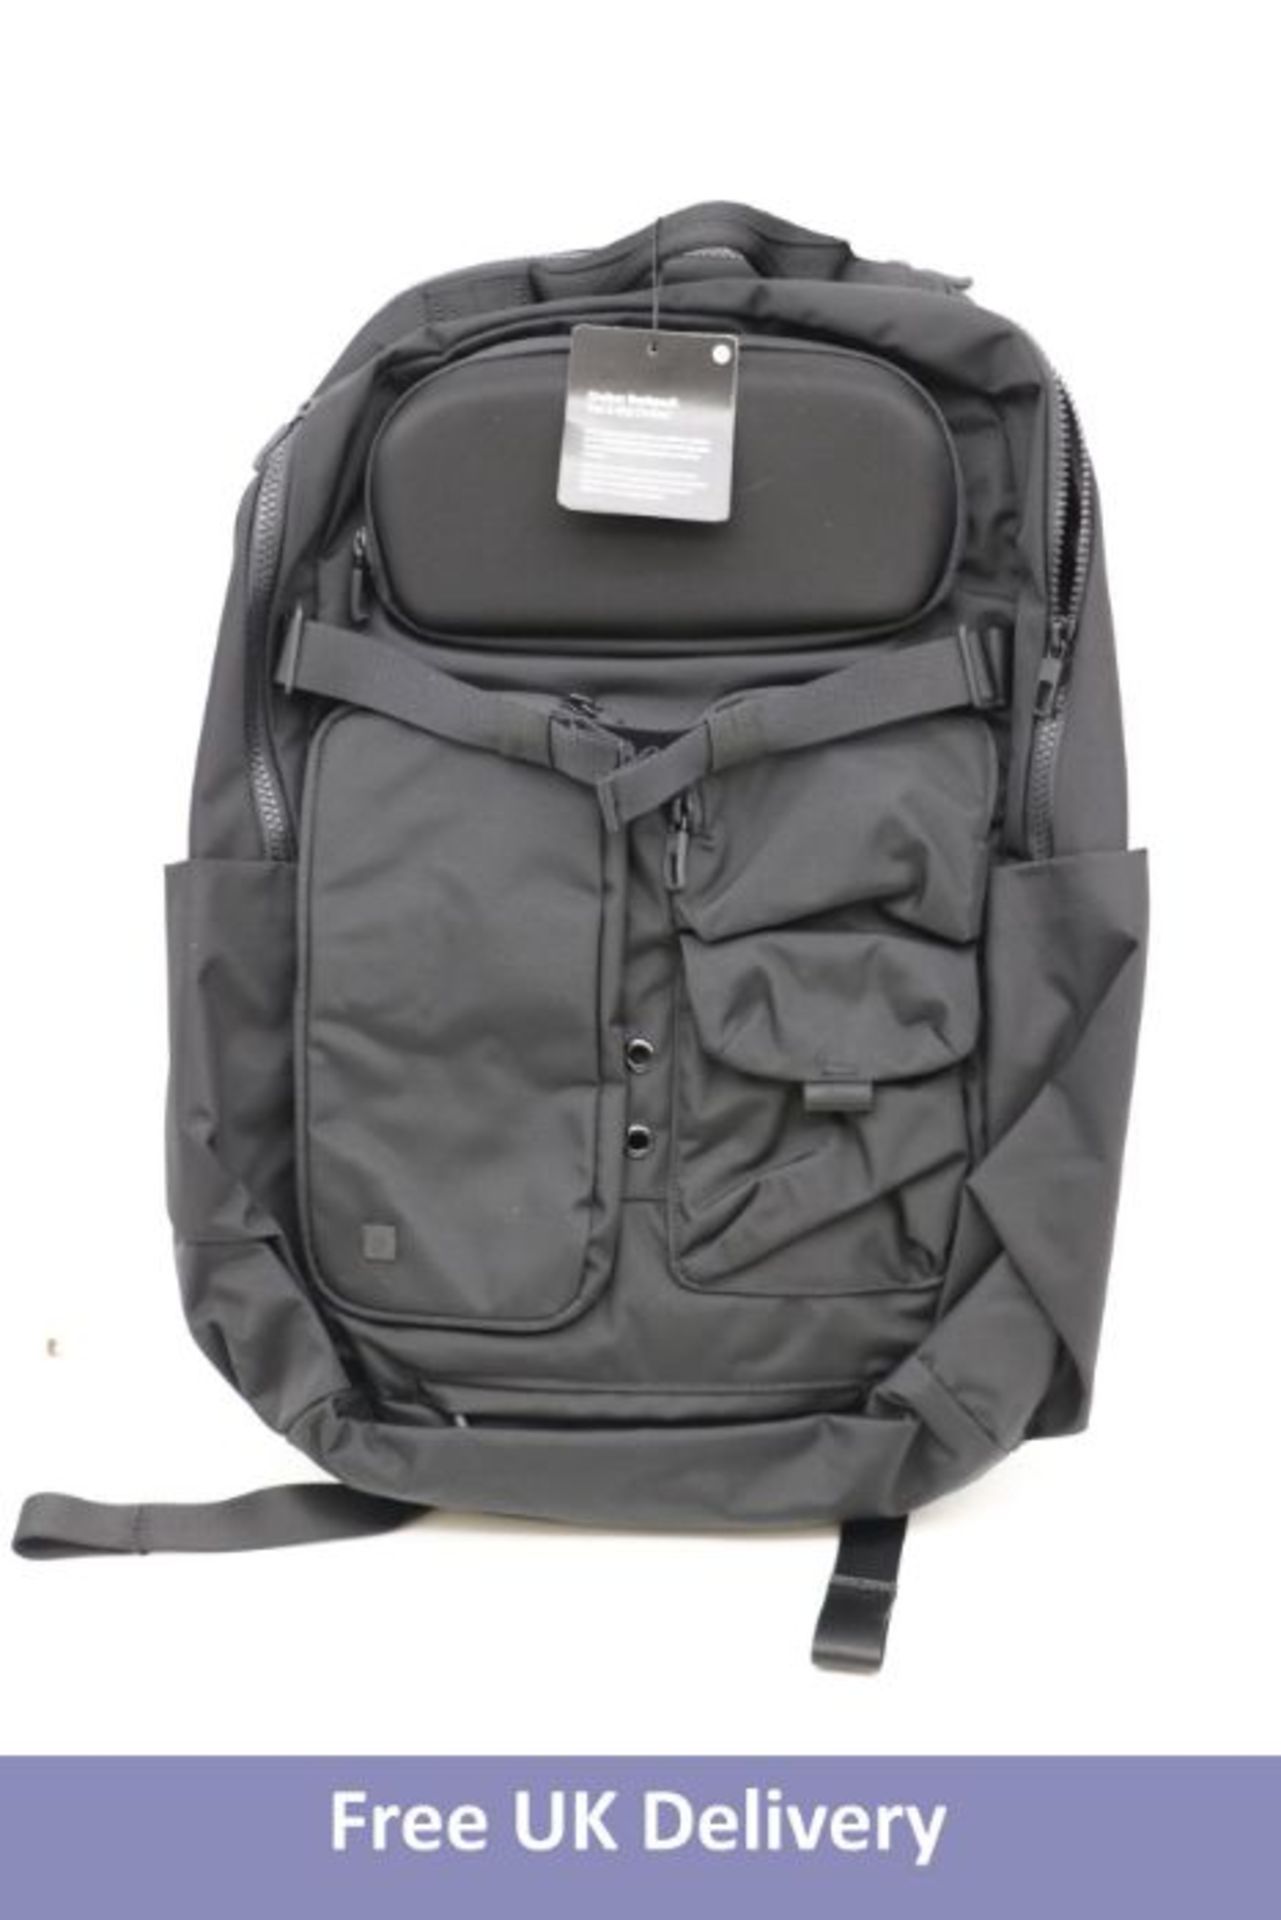 Cruiser Backpack, Black, 22 Litre